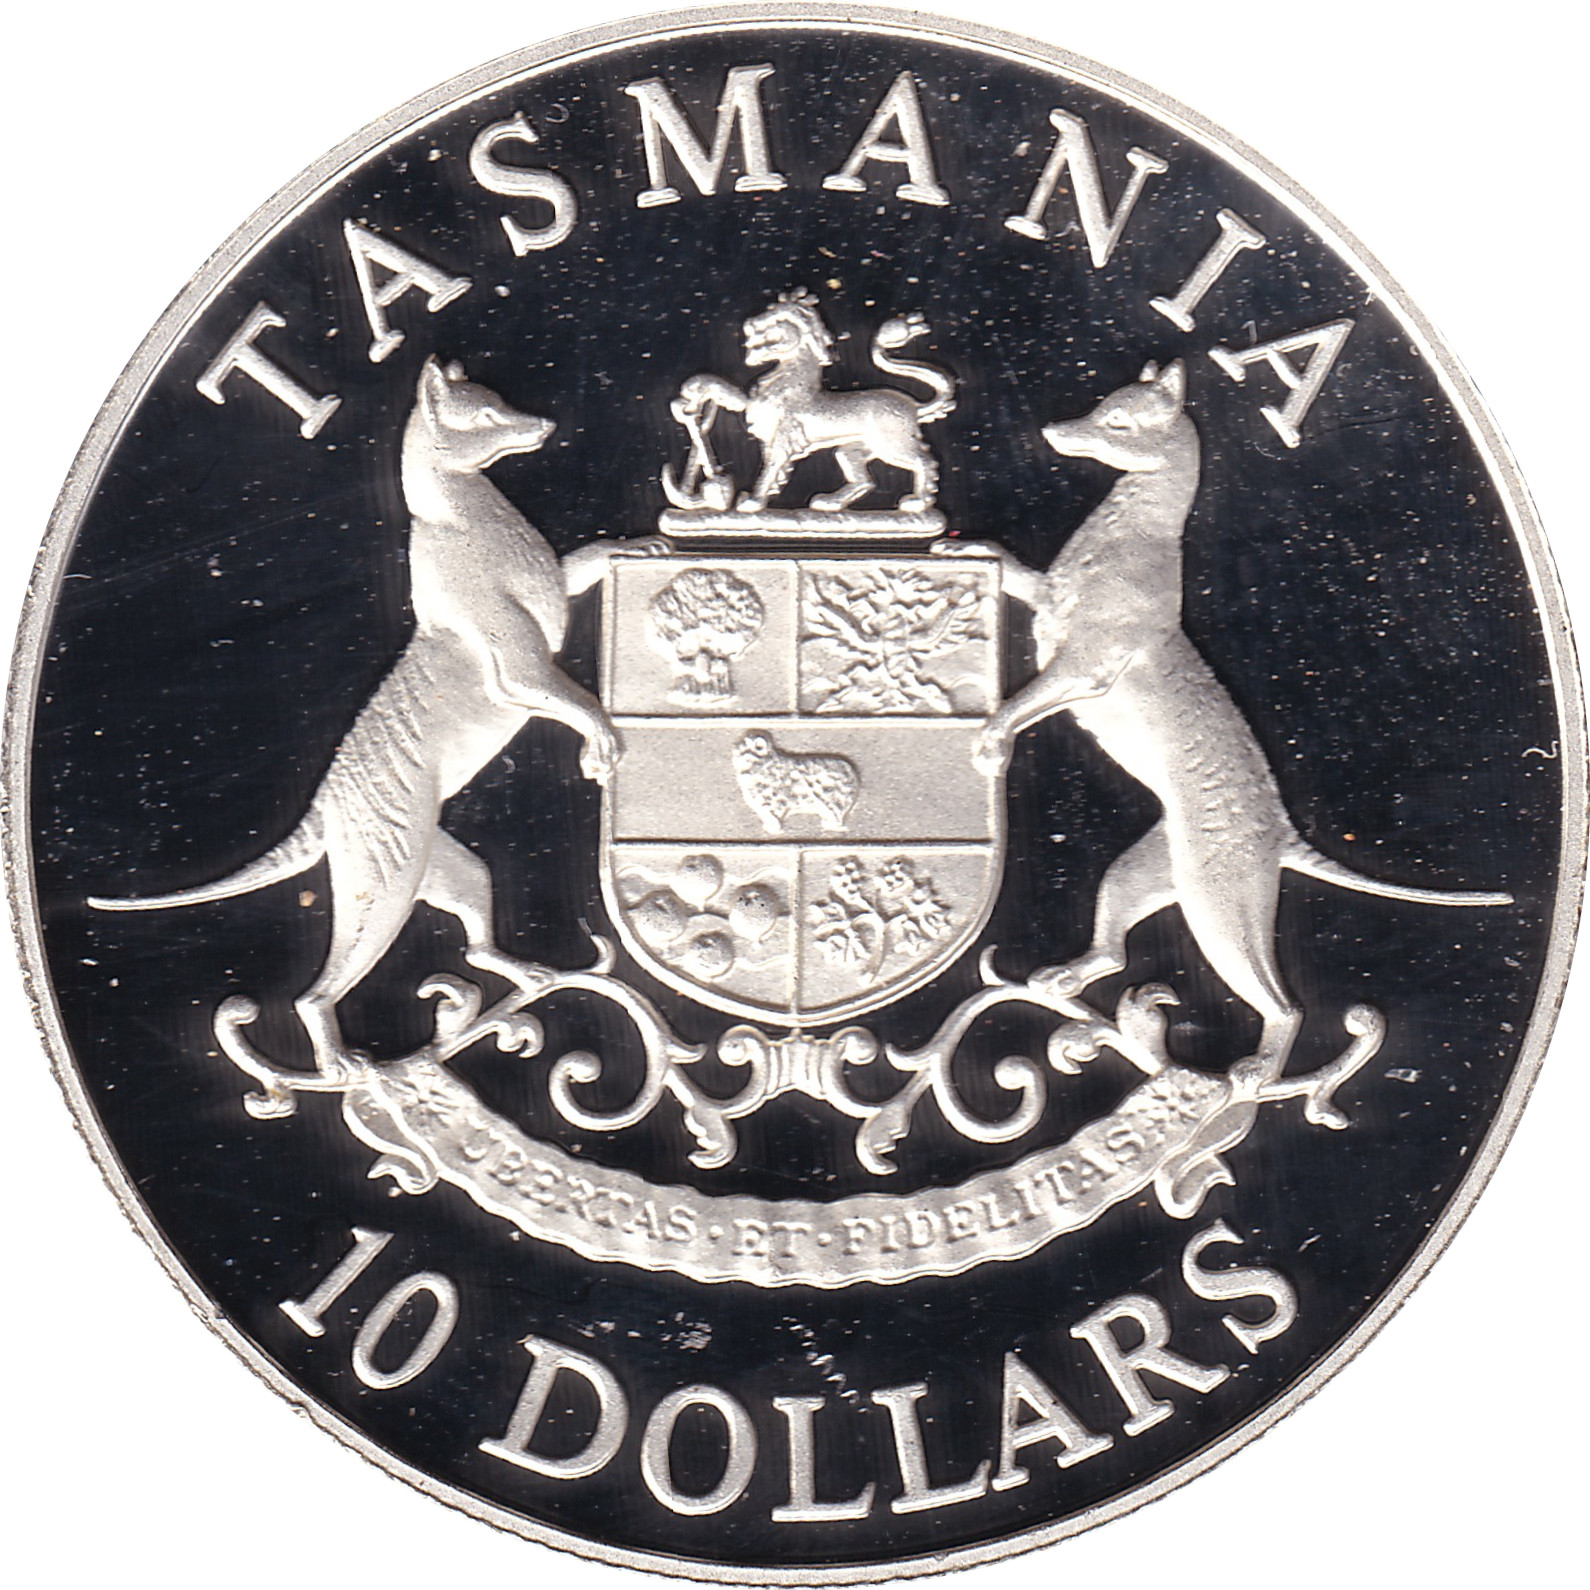 10 dollars - Tasmania